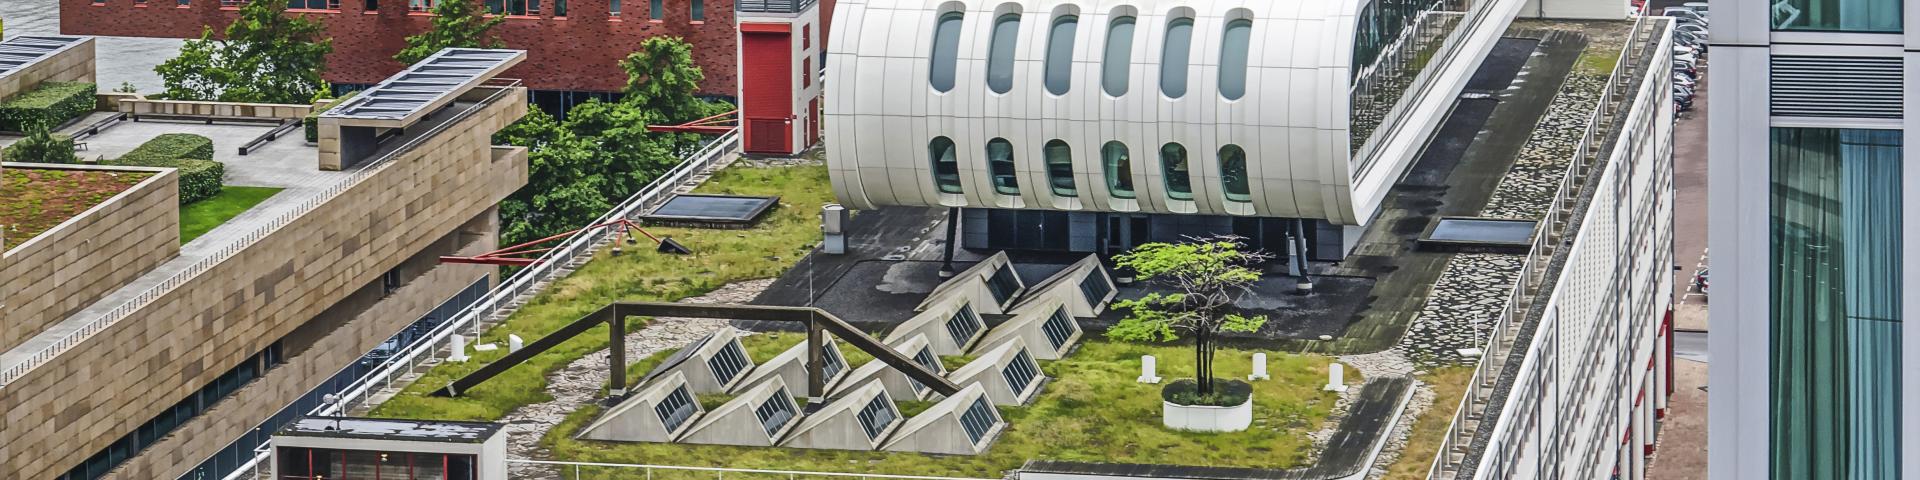 Rotterdam groen dak